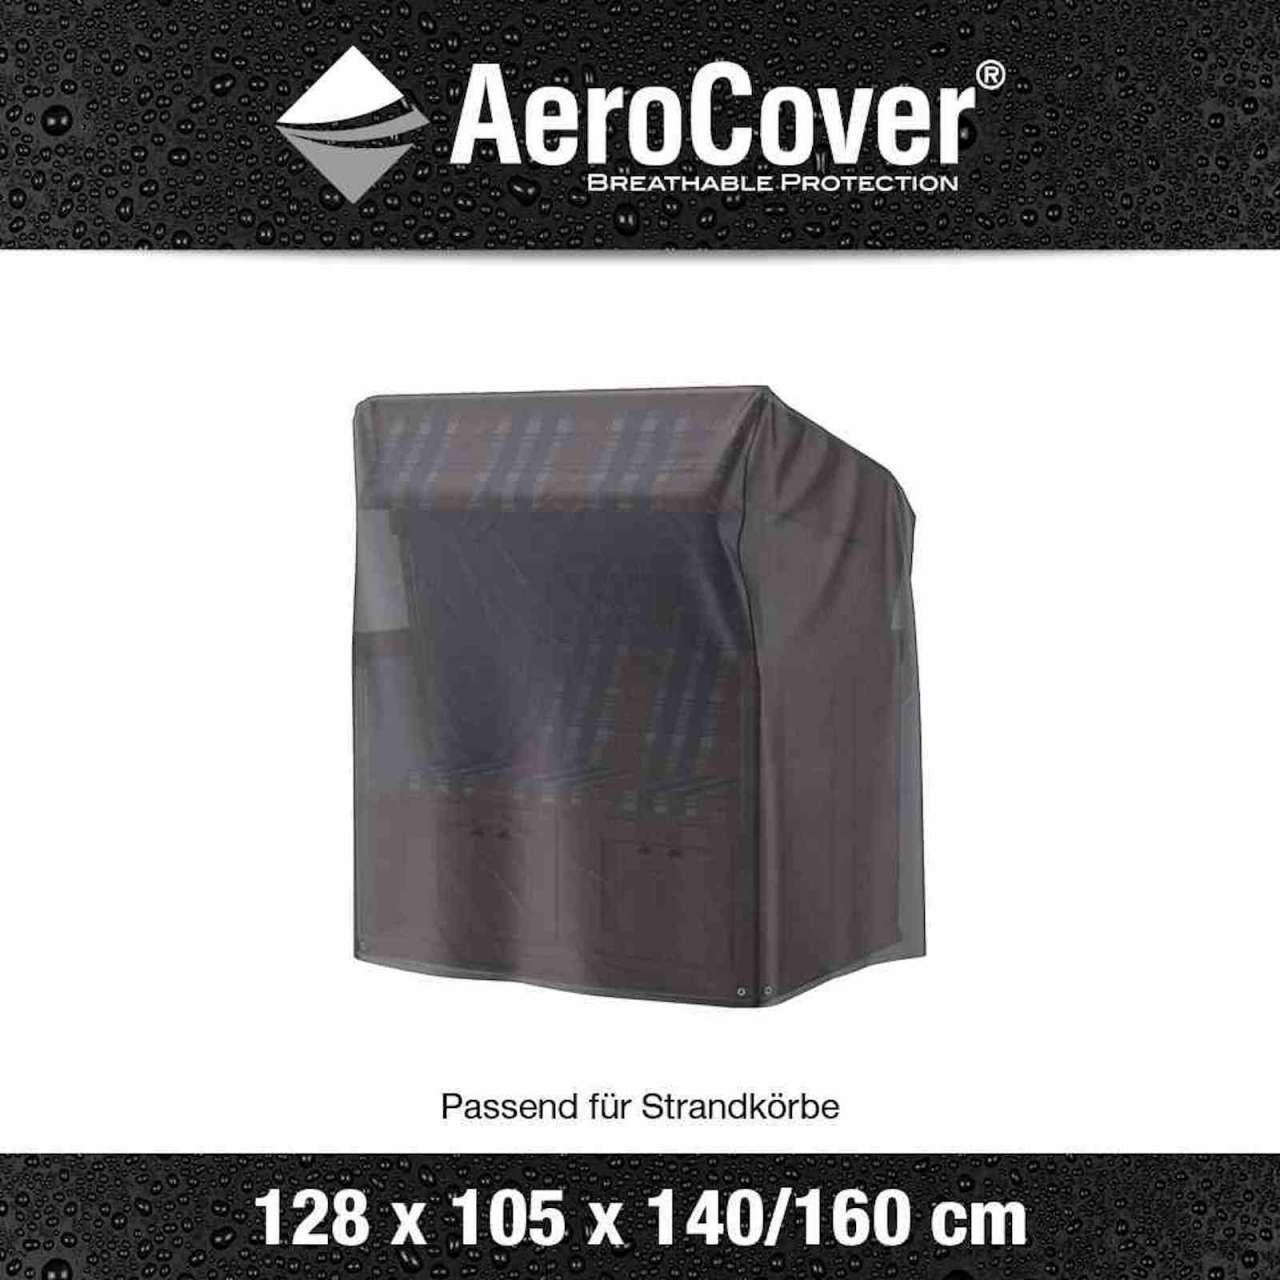 Aerocover Schutzhülle für Strandkorb 128x105x160/140 cm ab 64,90 € |  Preisvergleich bei